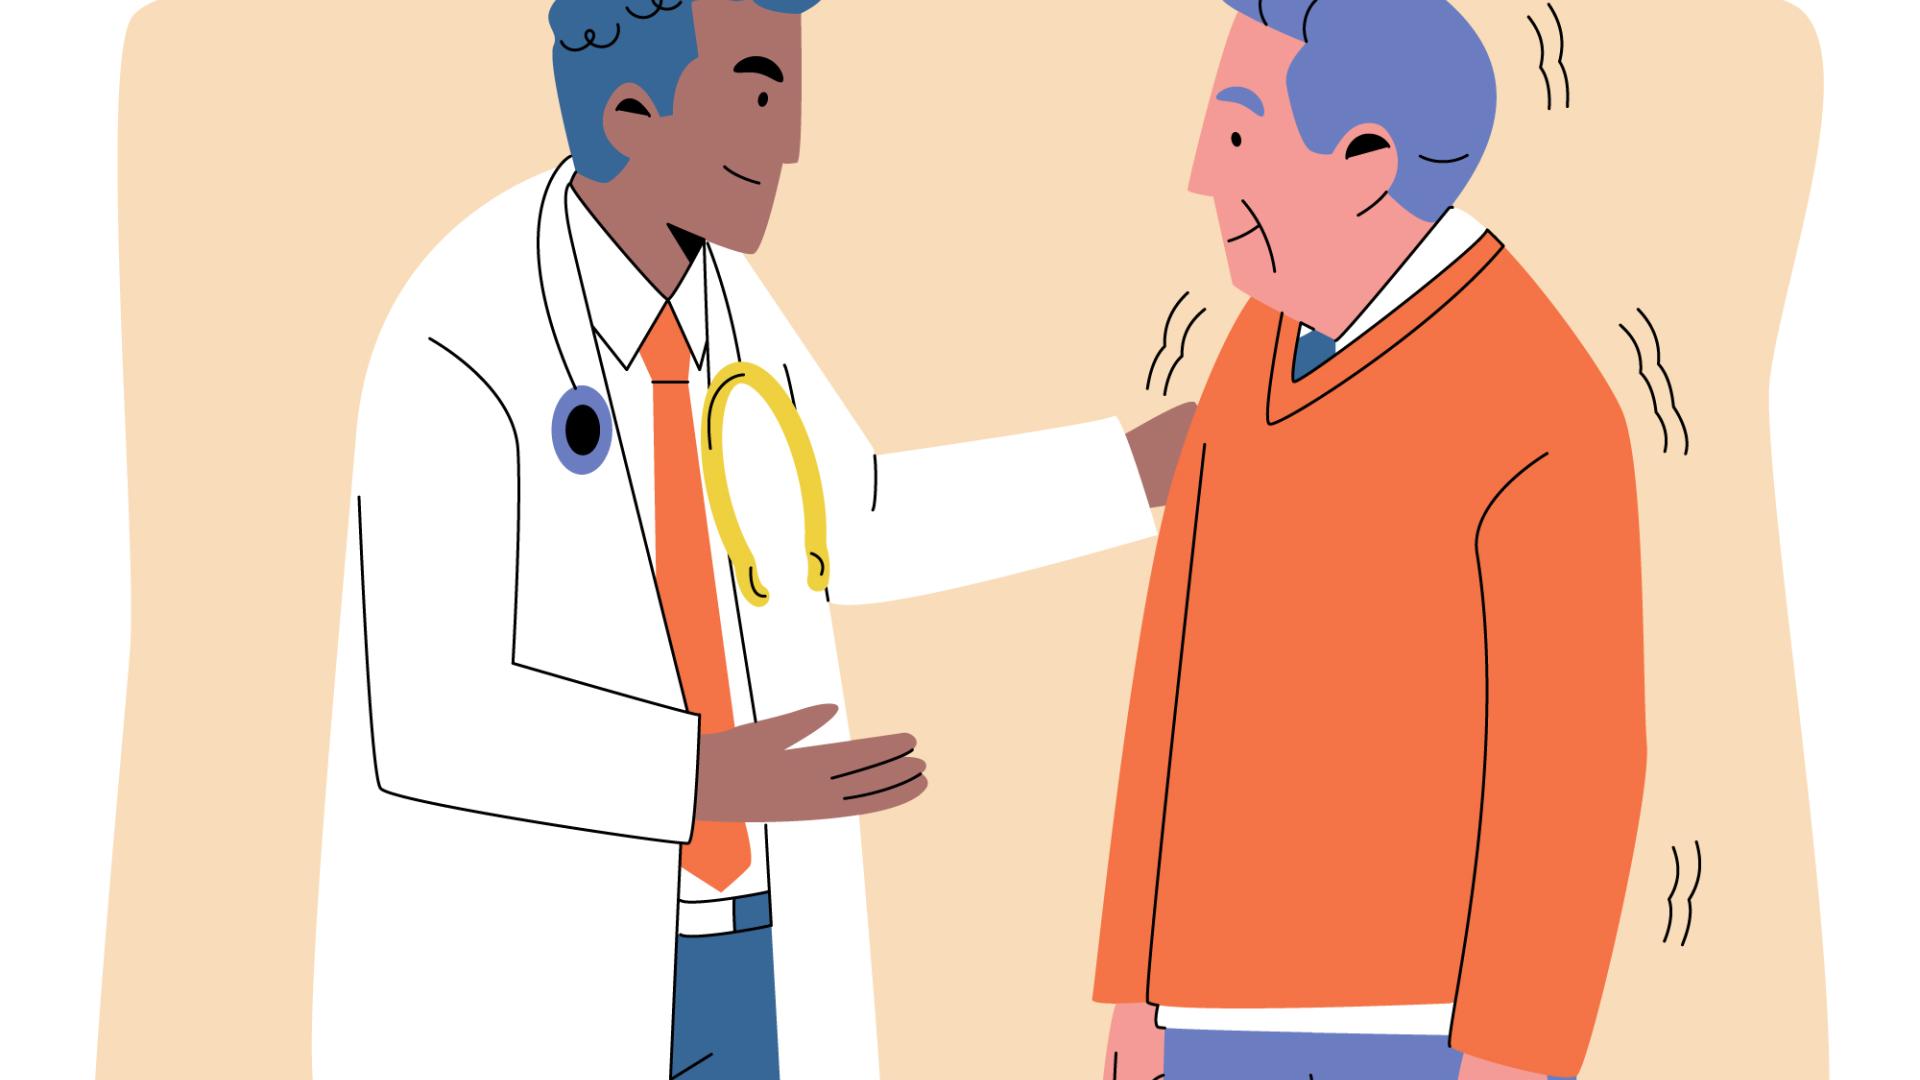 Na imagem, uma ilustração de um médico e um paciente. O médico está com a mão no ombro do paciente